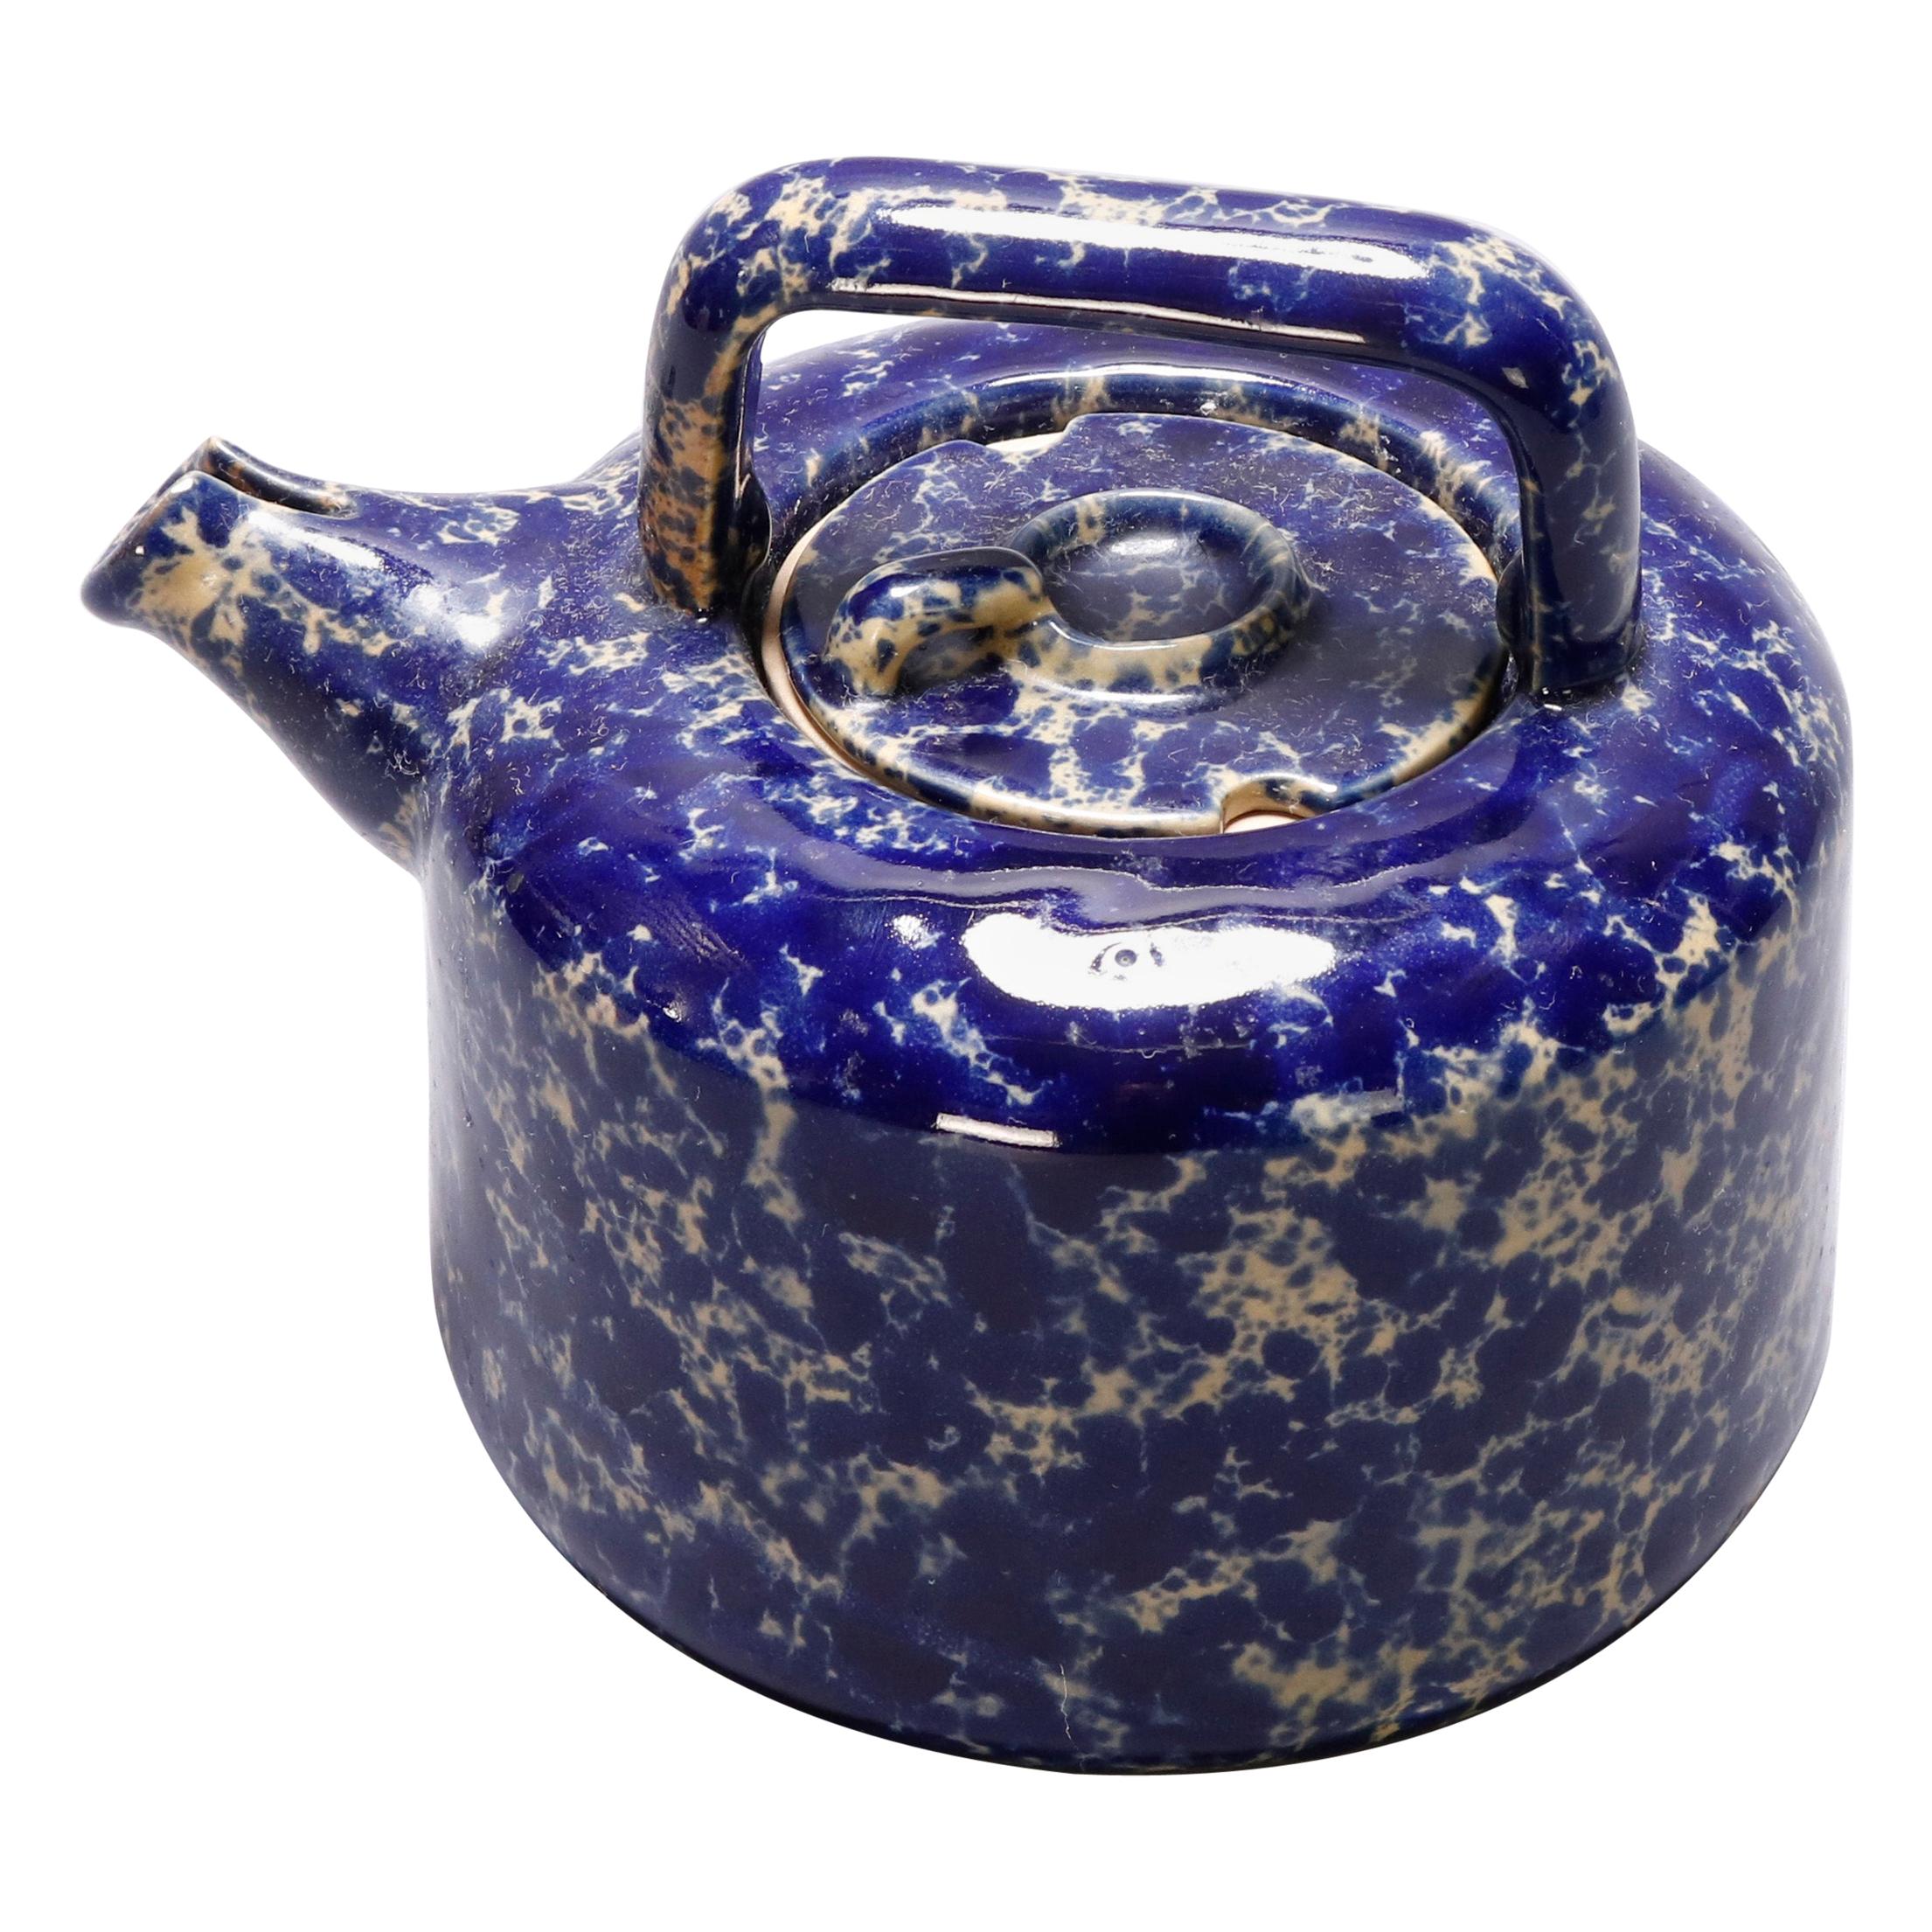 Antique Cobalt Blue Sponge Wear Pottery Teapot with Strainer, 19th Century